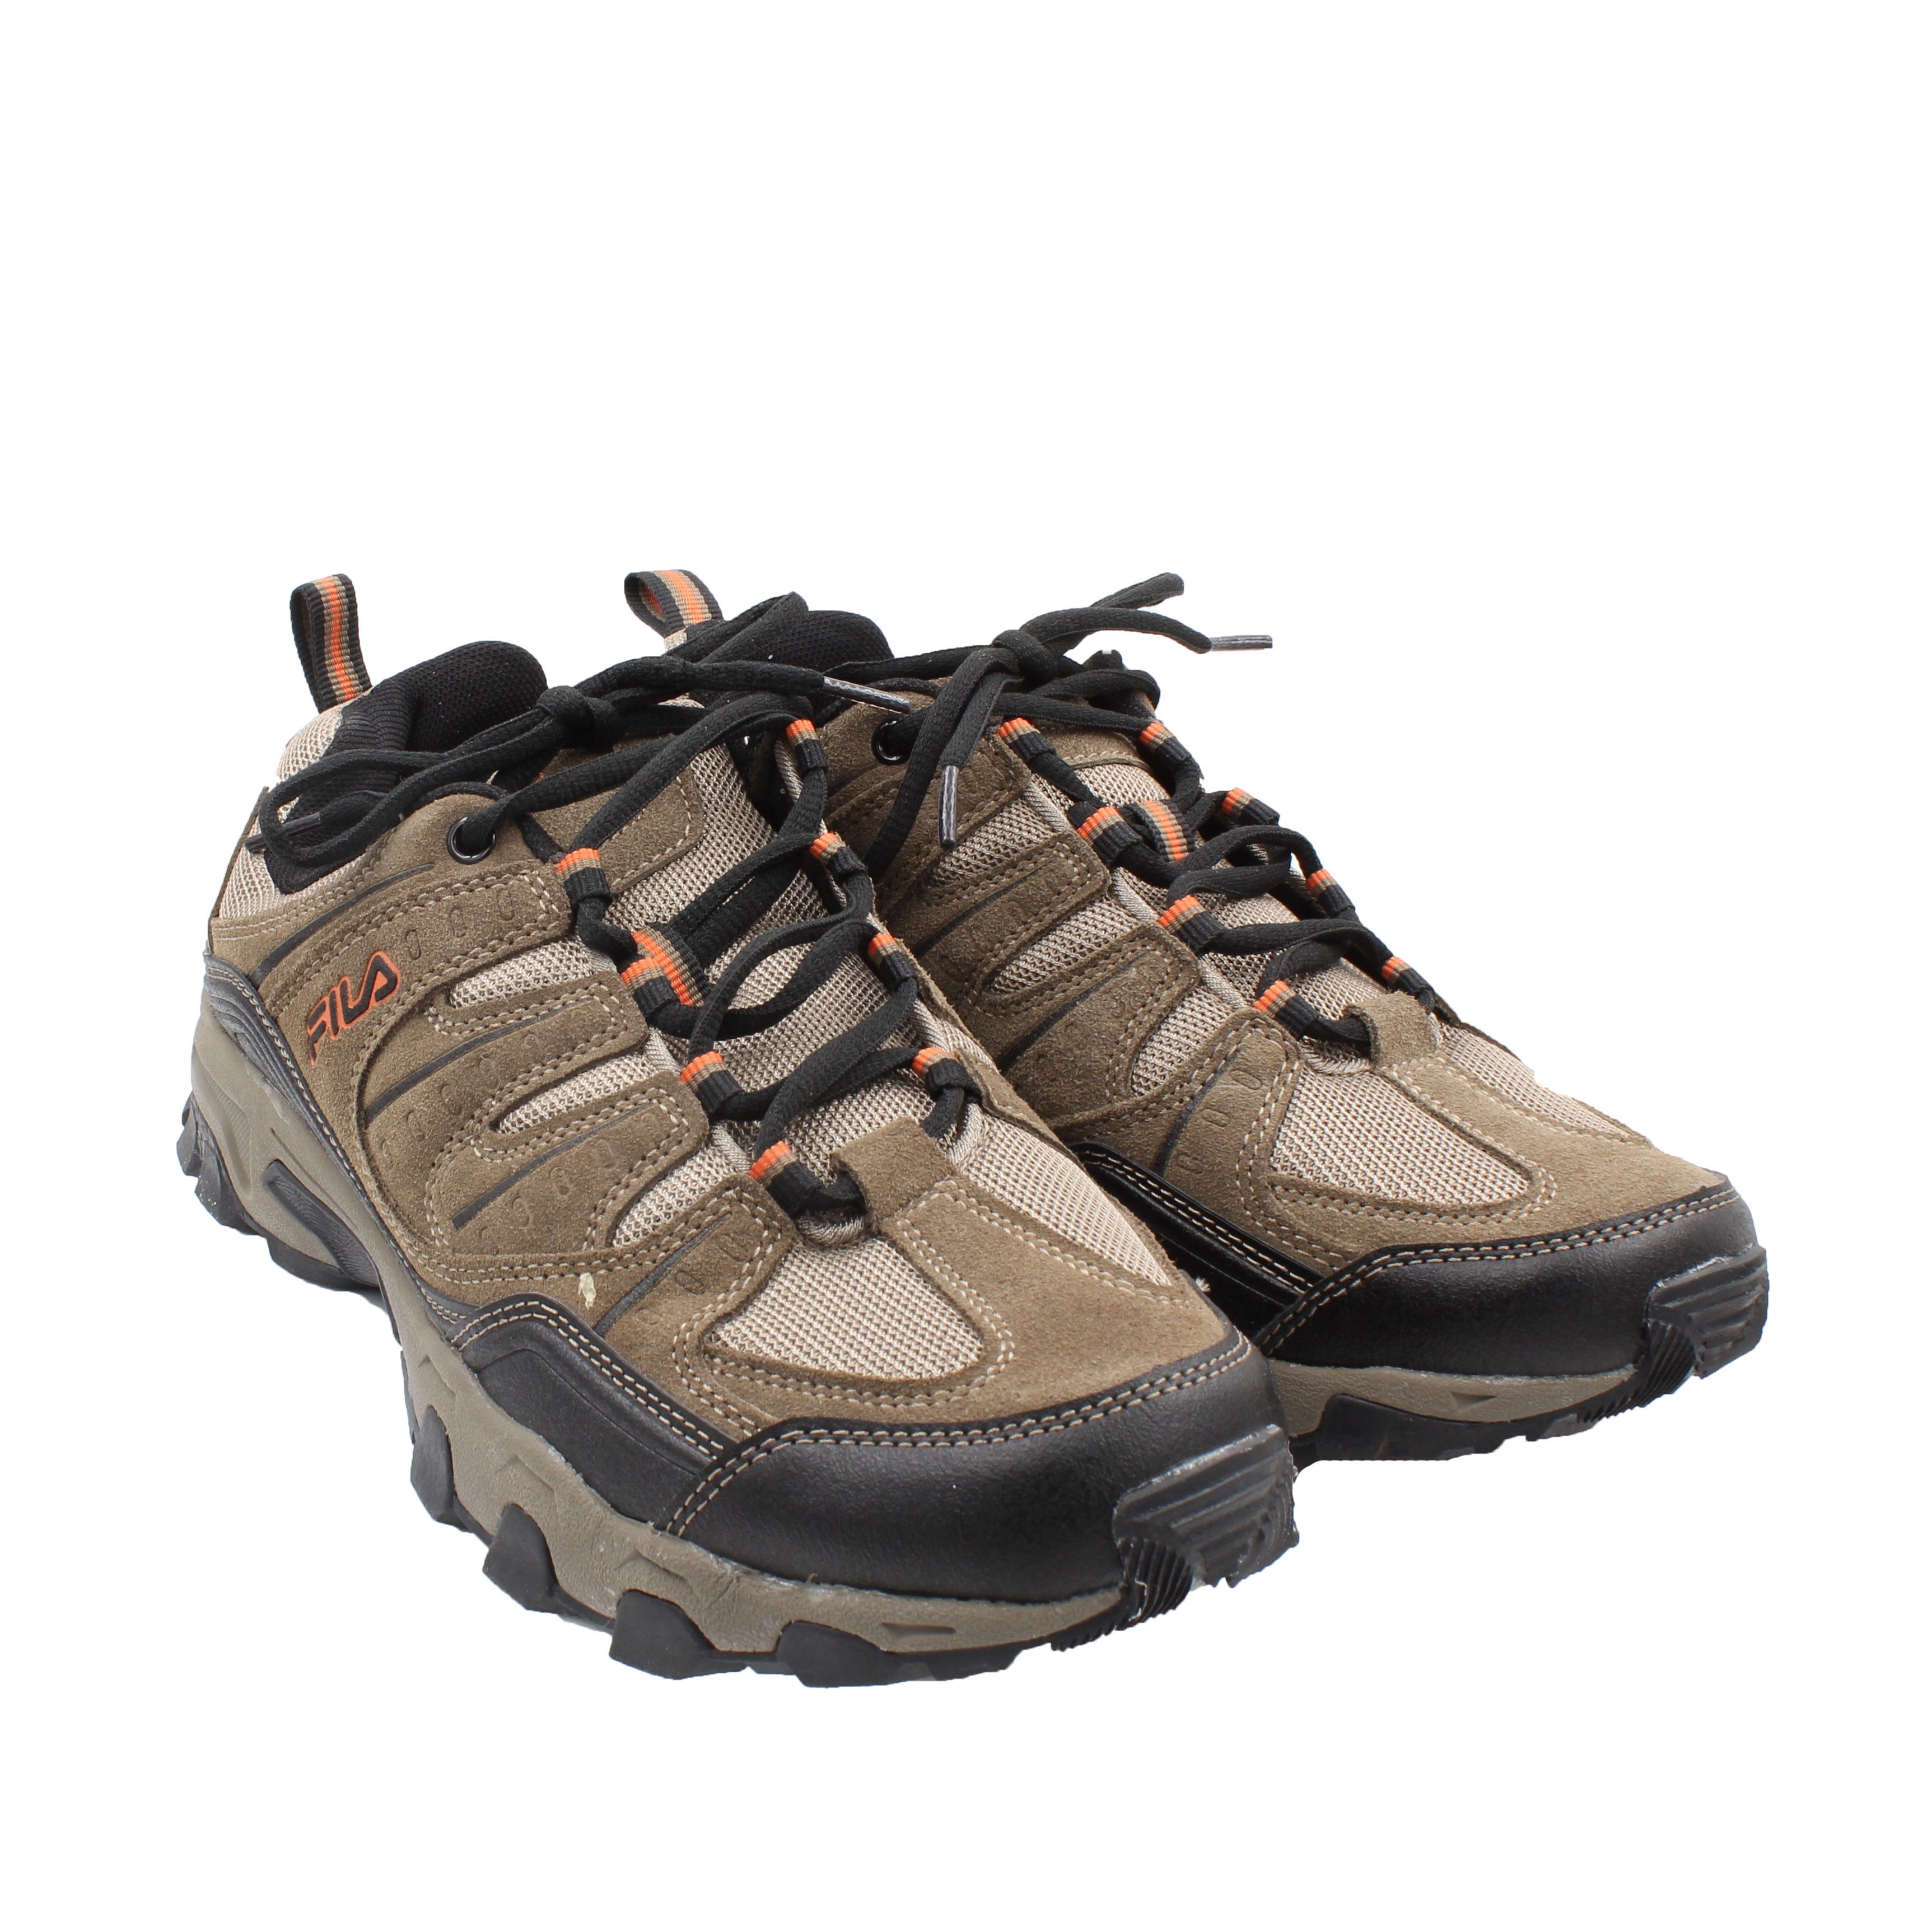 Fila Men's Outdoor Running Shoes (Brown/Orange, 9.5)